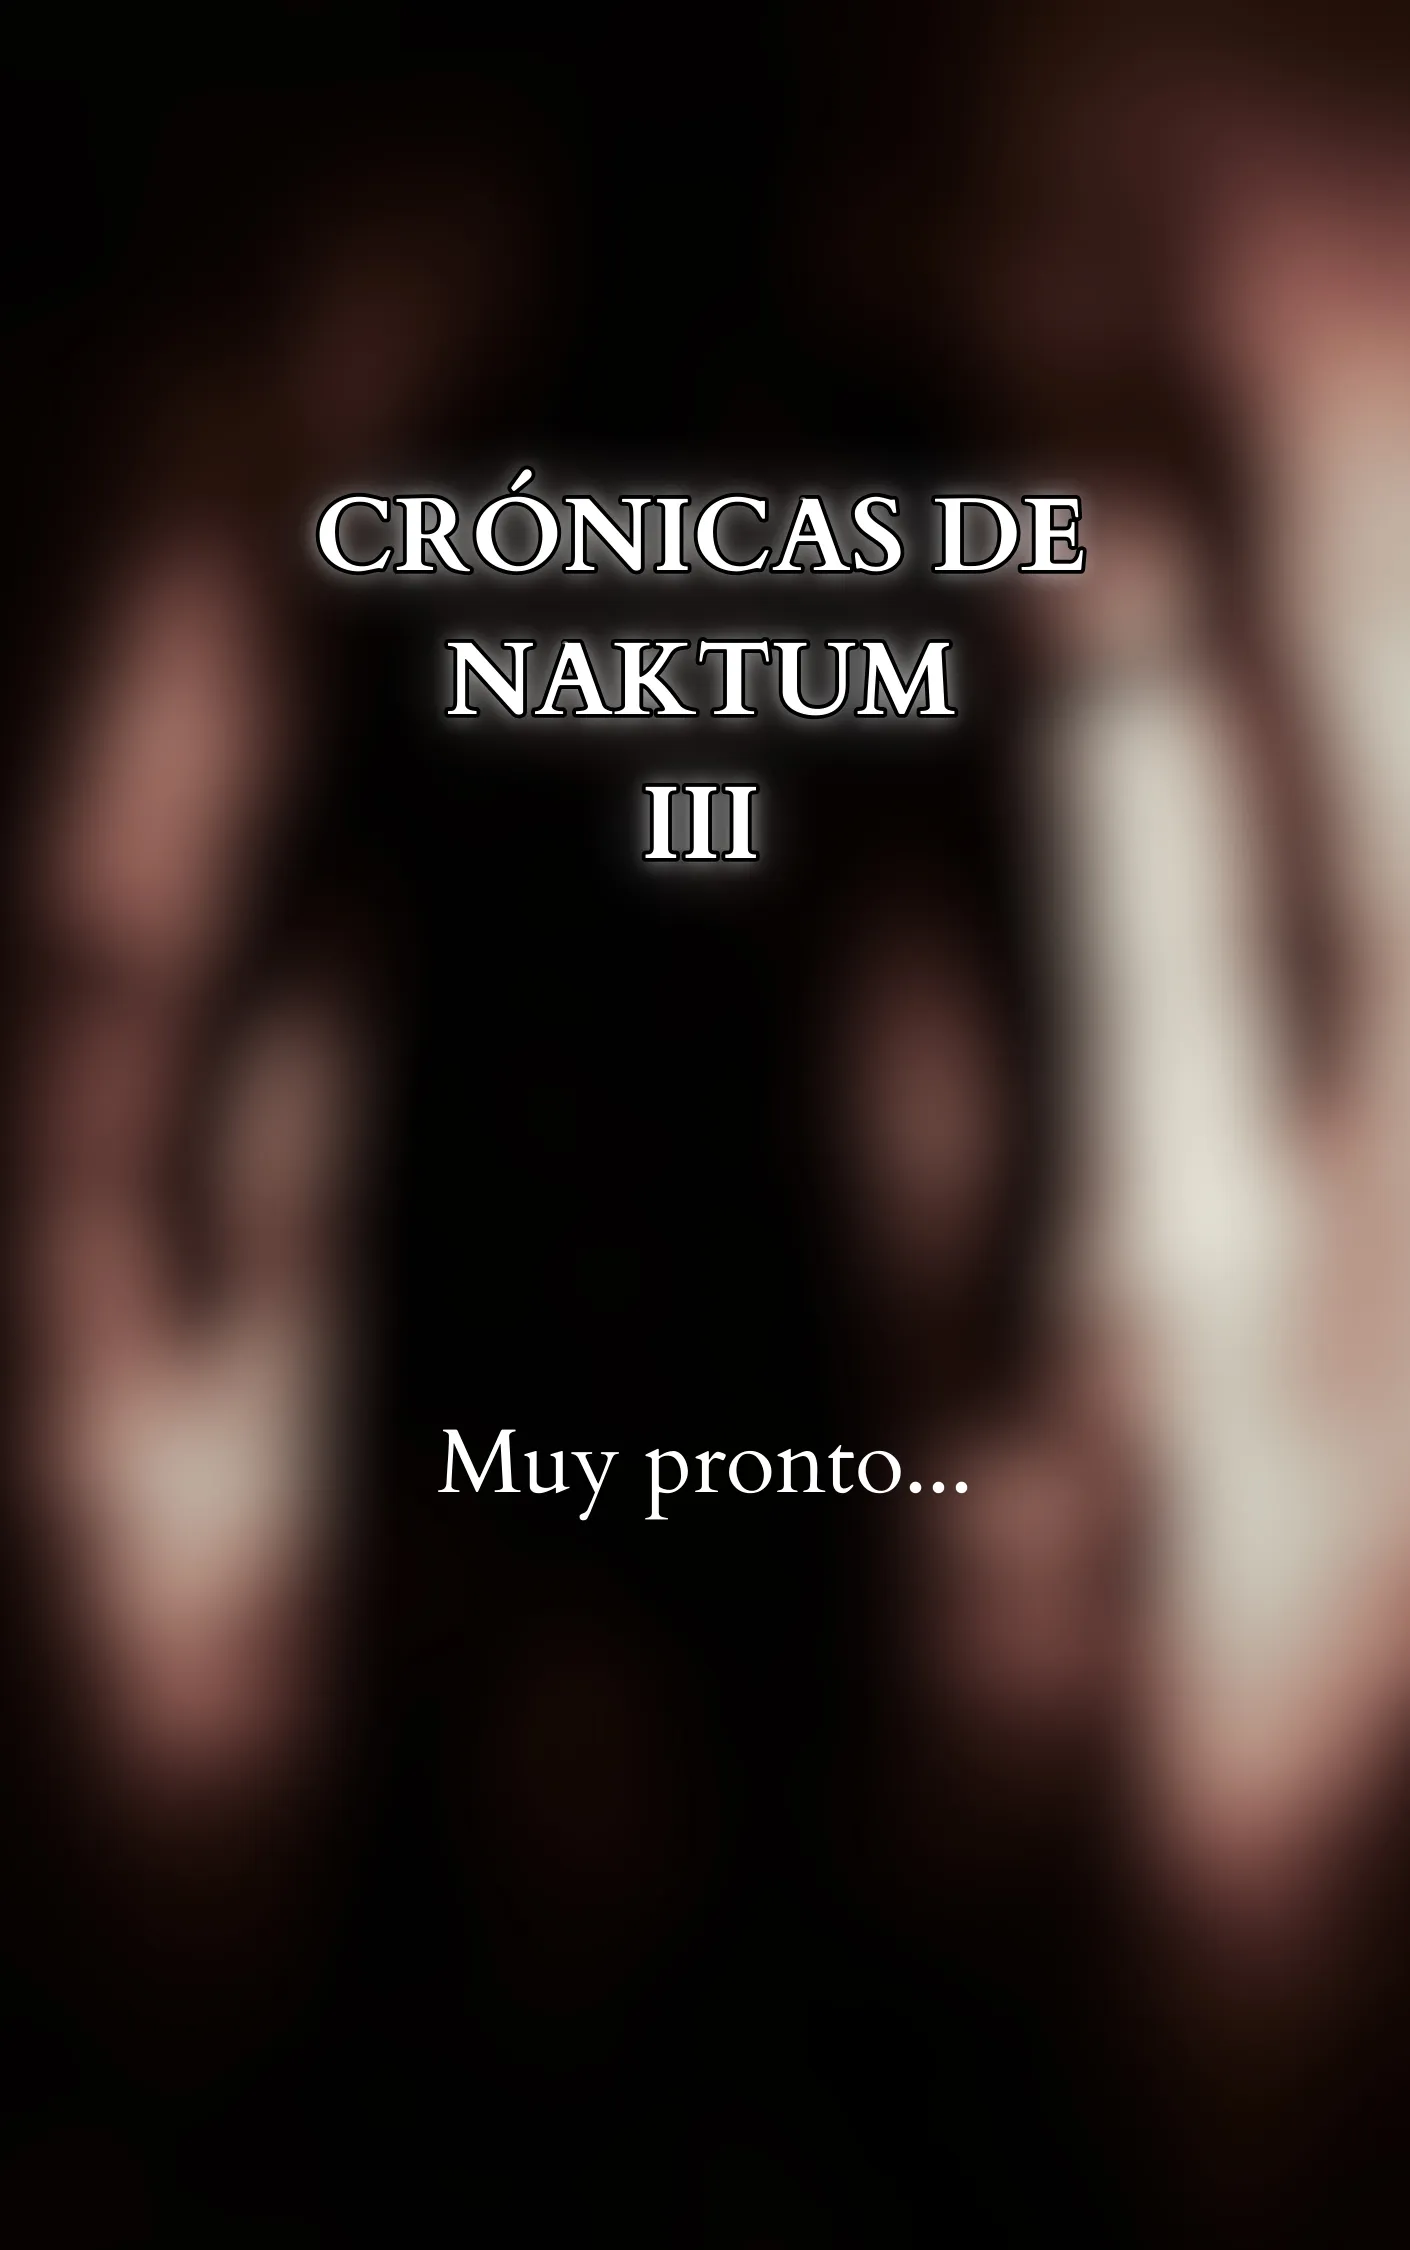 Crónicas de Naktum III